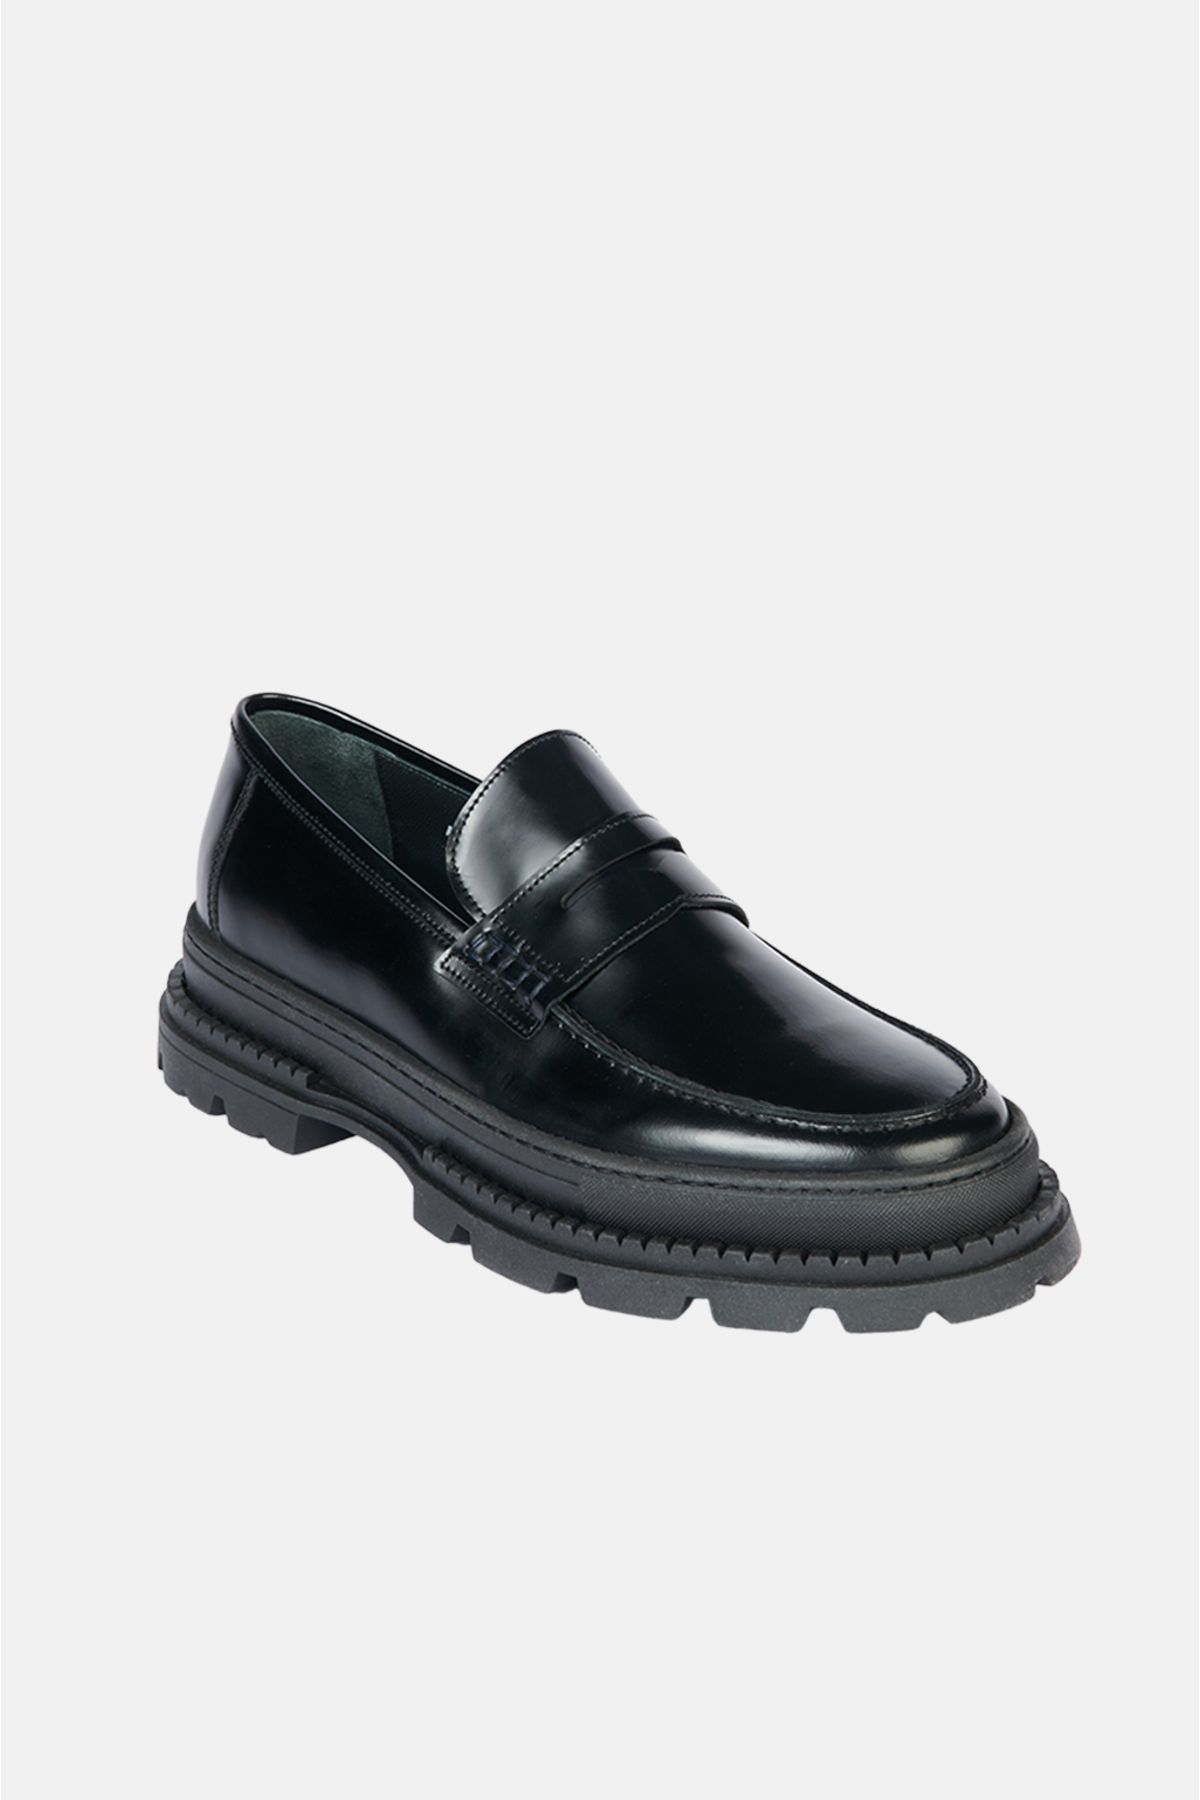 Avva Erkek Siyah %100 Deri Bağcıksız Klasik Ayakkabı A32y8015